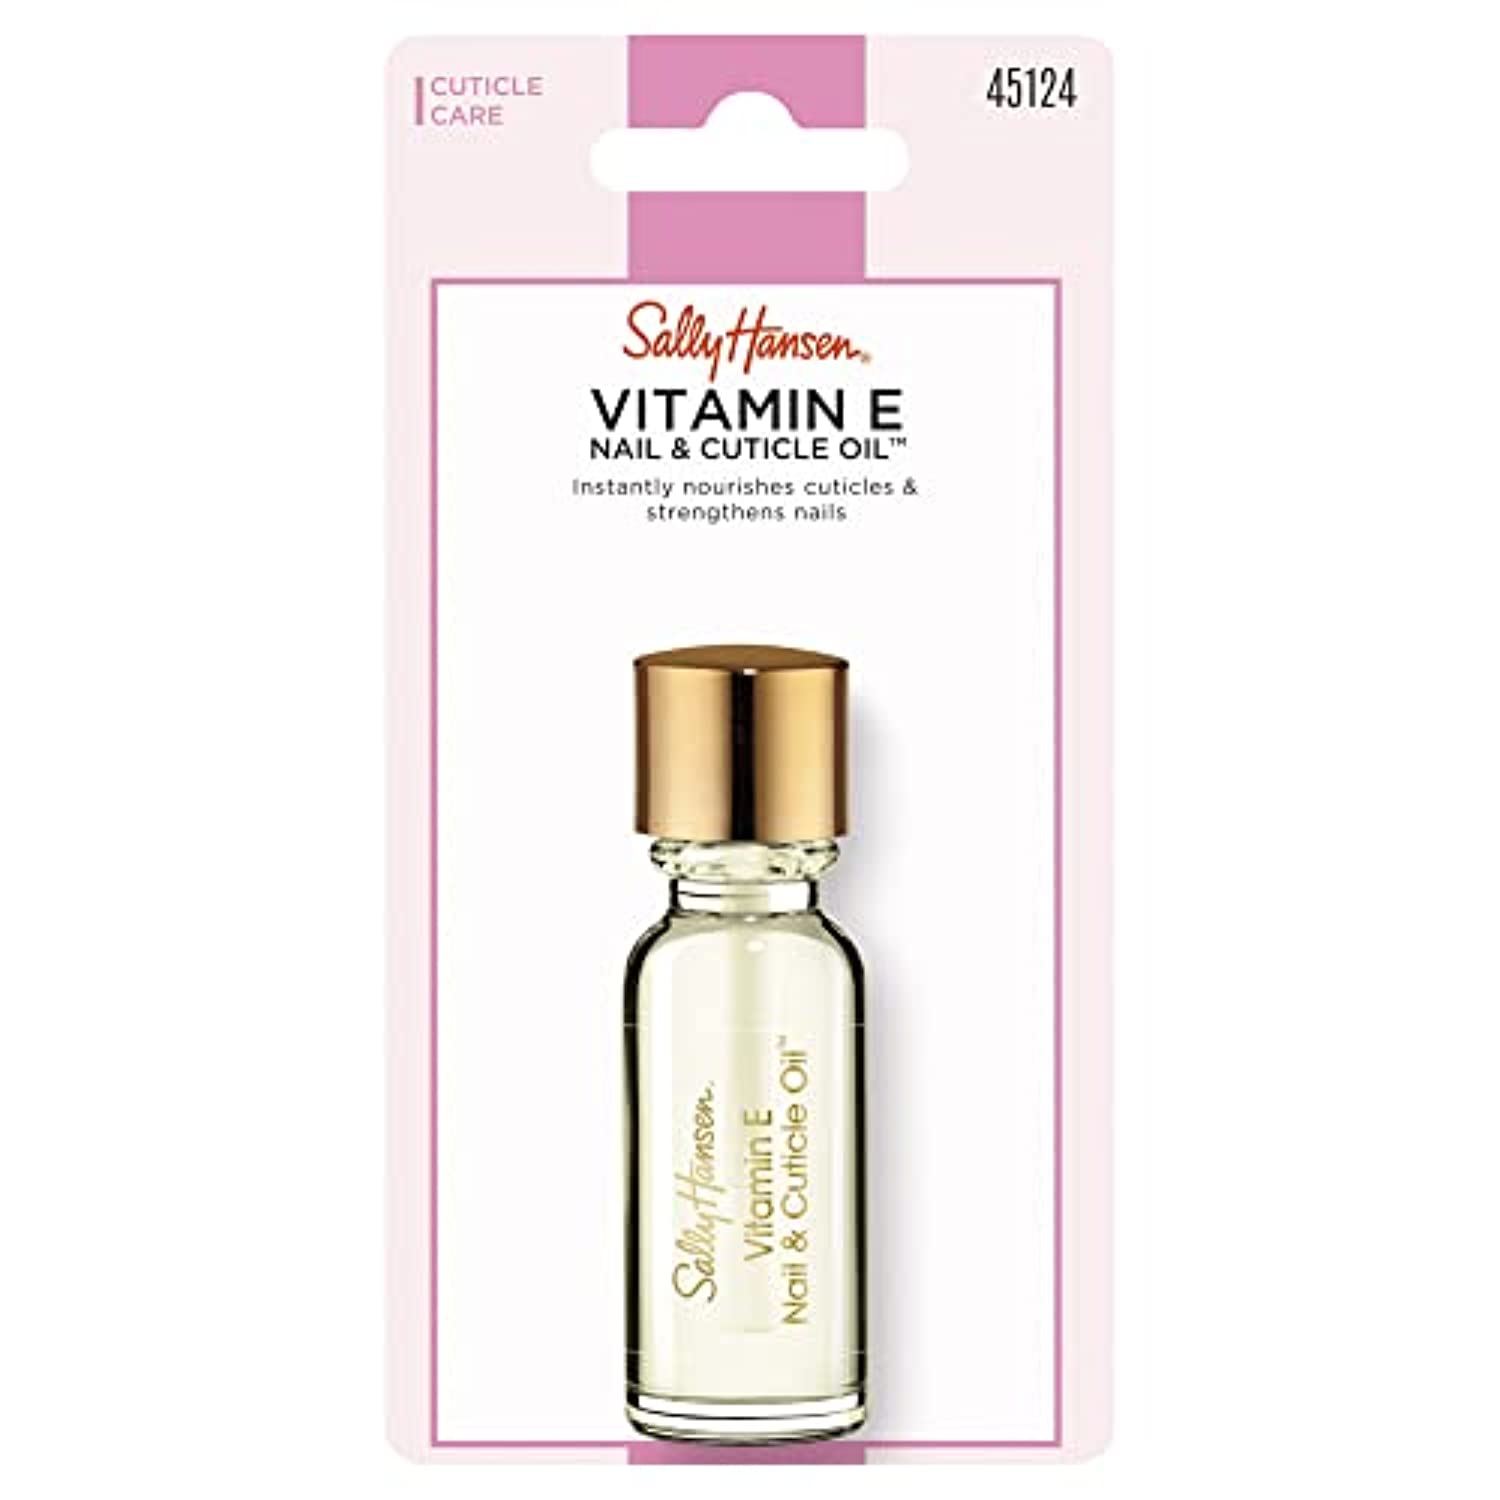 Sally Hansen Vitamin E Nail and Cuticle Oil, 0.45 Fluid Ounce